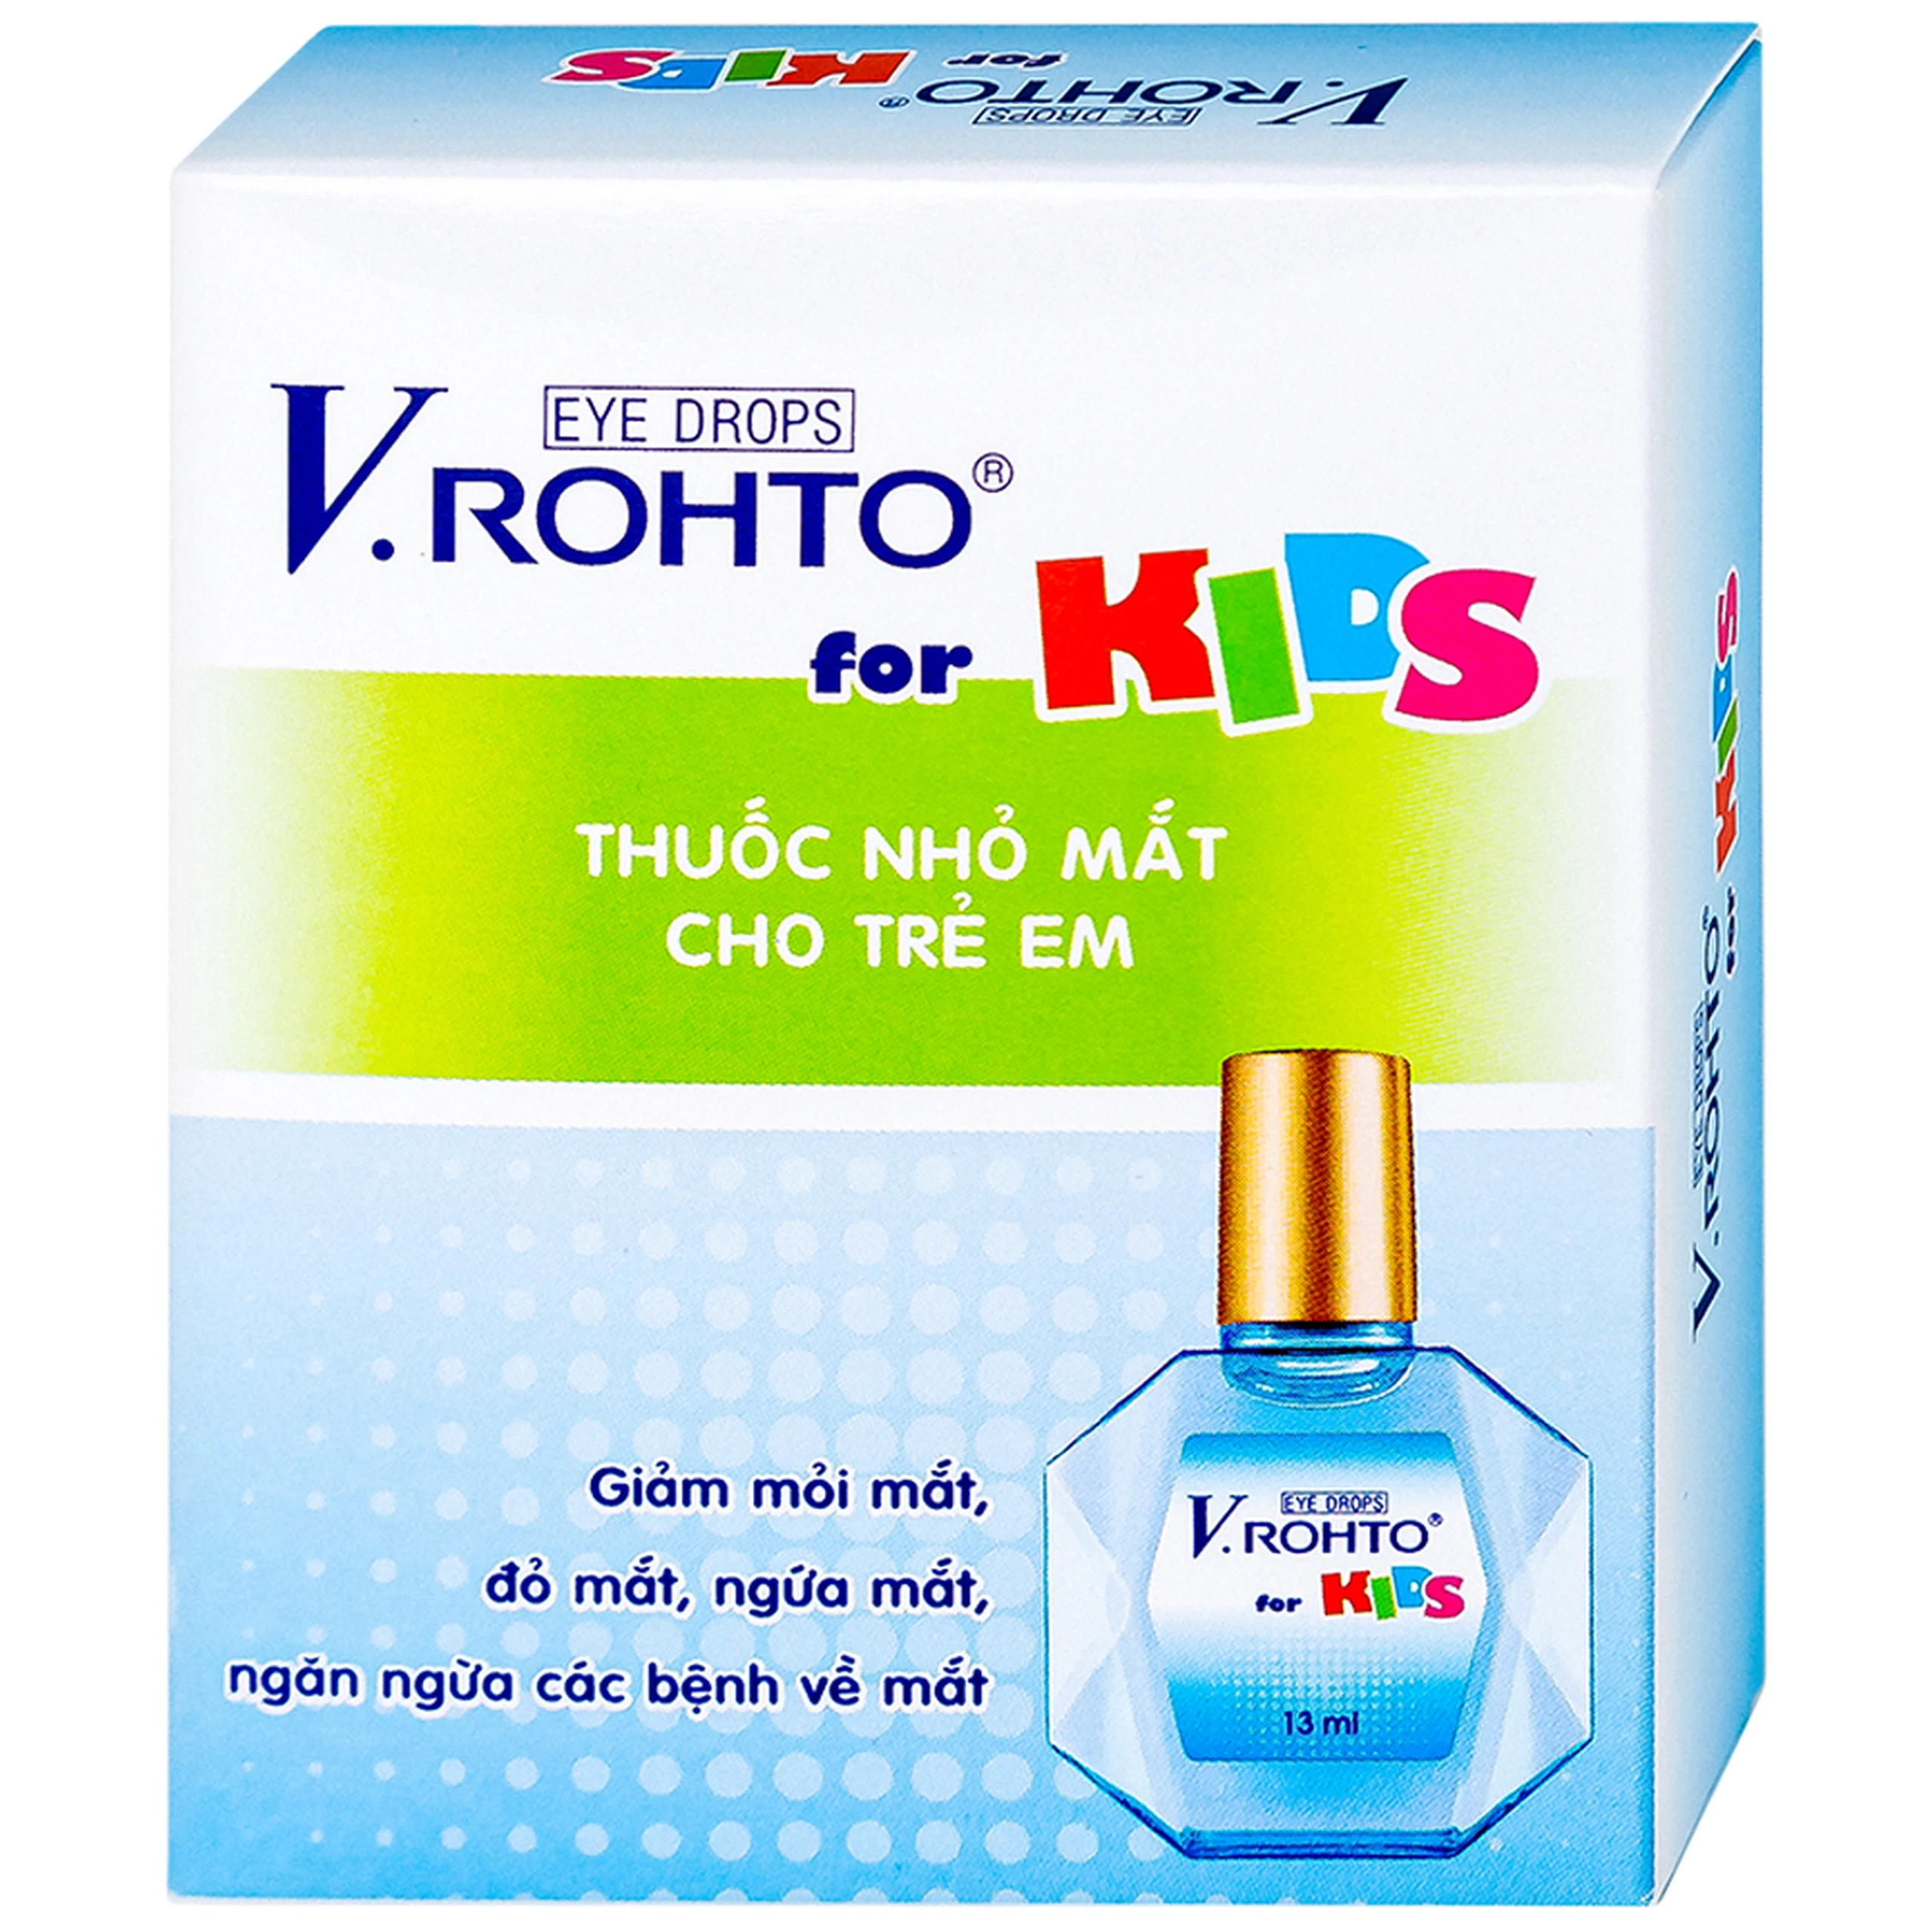 Thuốc nhỏ mắt V.Rohto For Kids giảm mỏi mắt, đỏ mát, ngứa mắt (13ml)